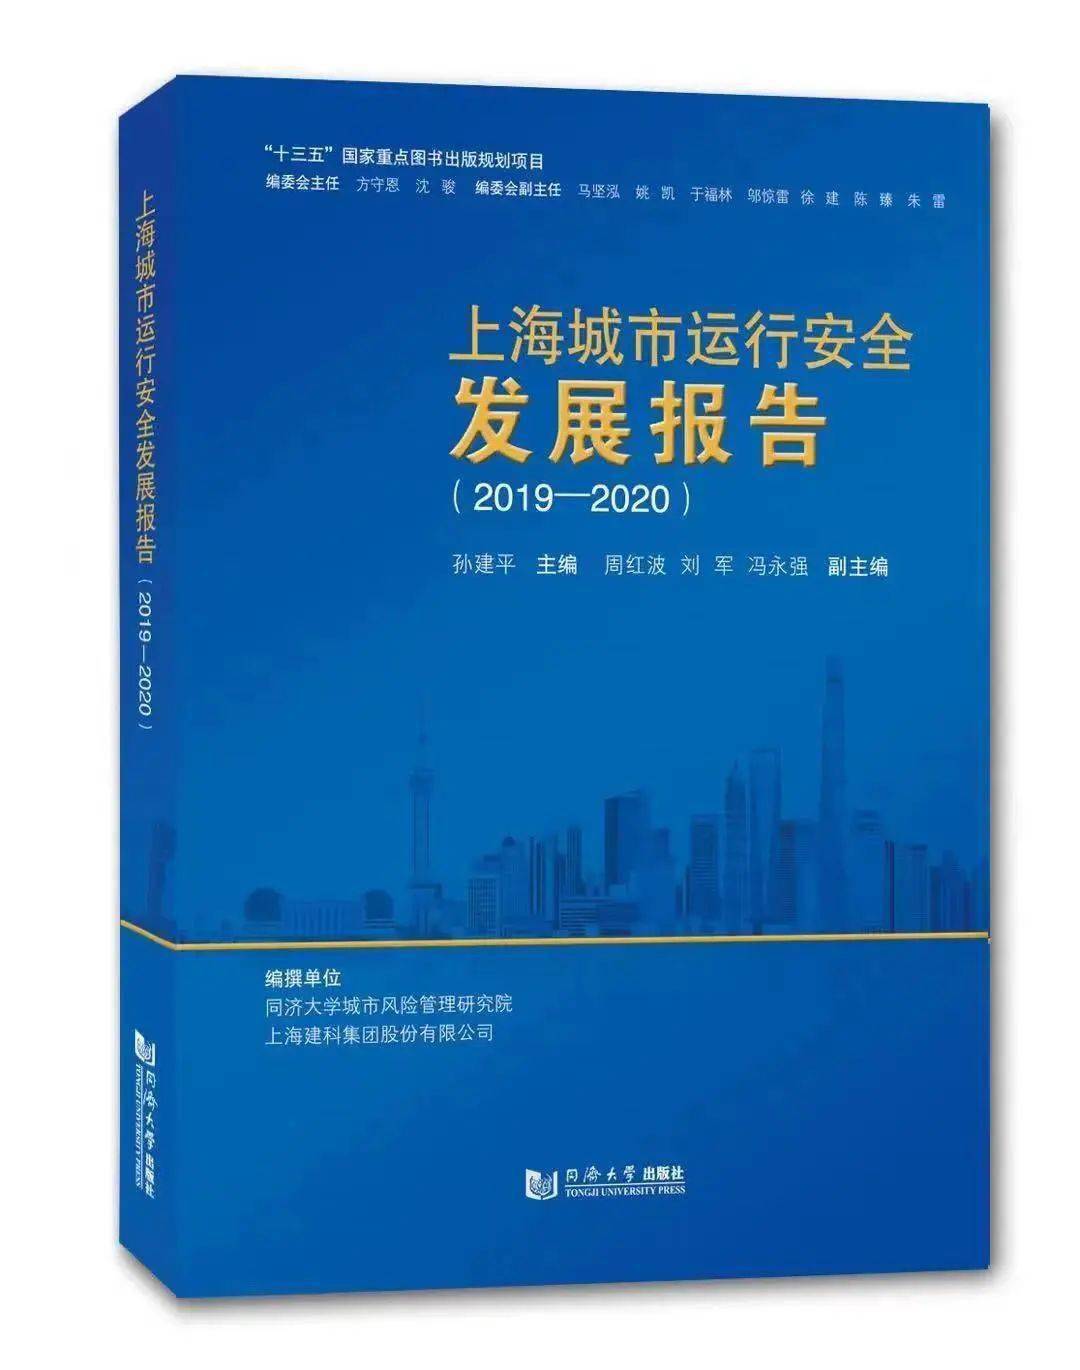 好书新书上海城市运行安全发展报告20192020出版